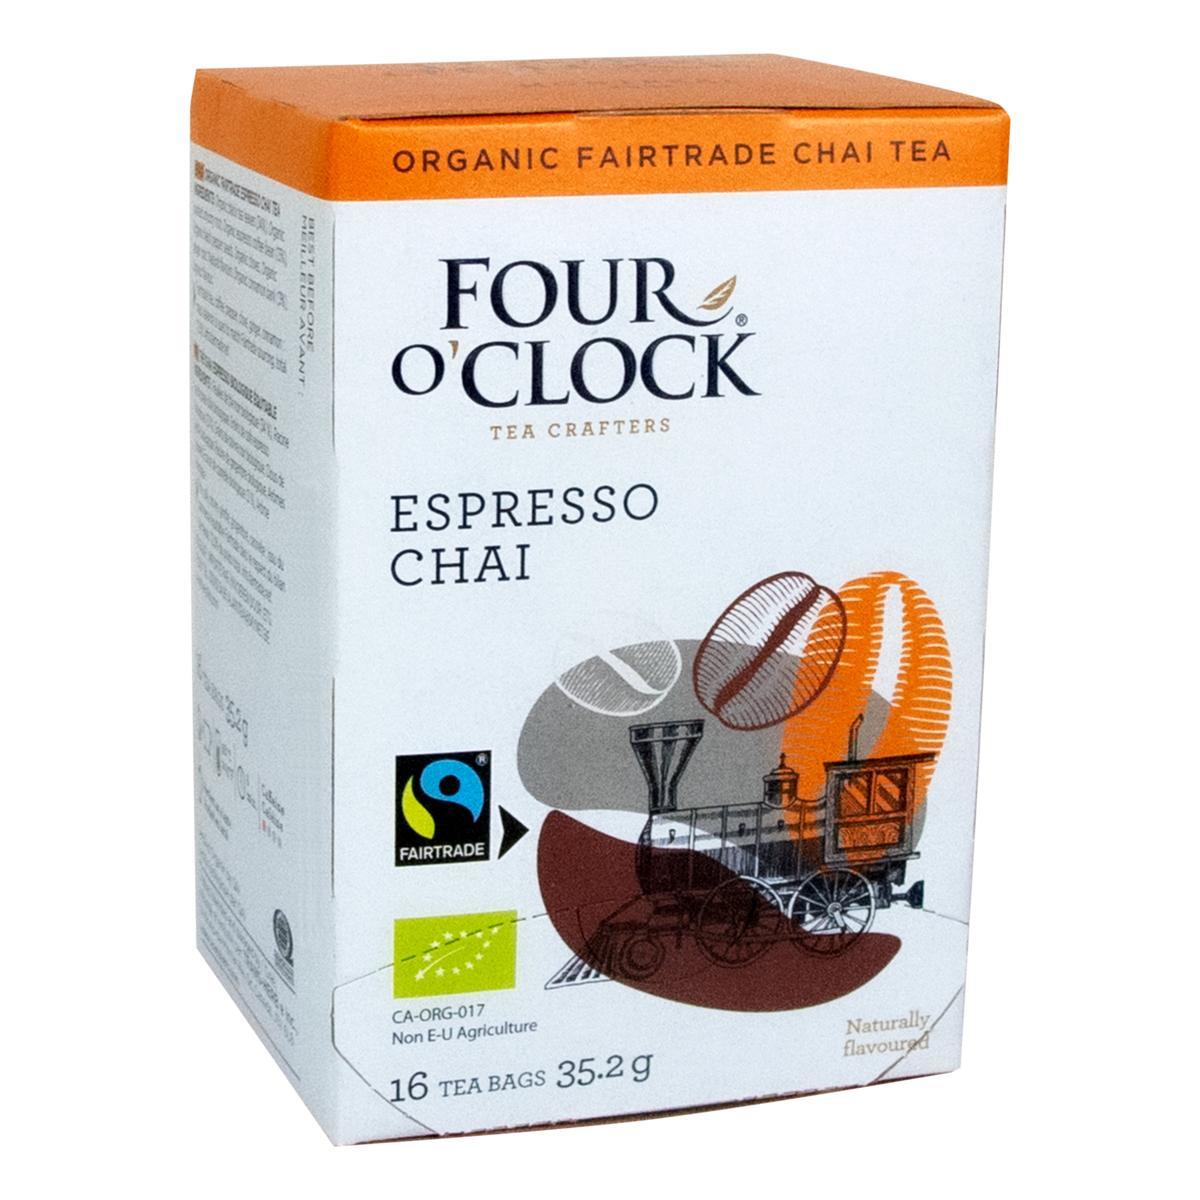 Four O’Clock's Four O'Clock ESPRESSO CHAI'